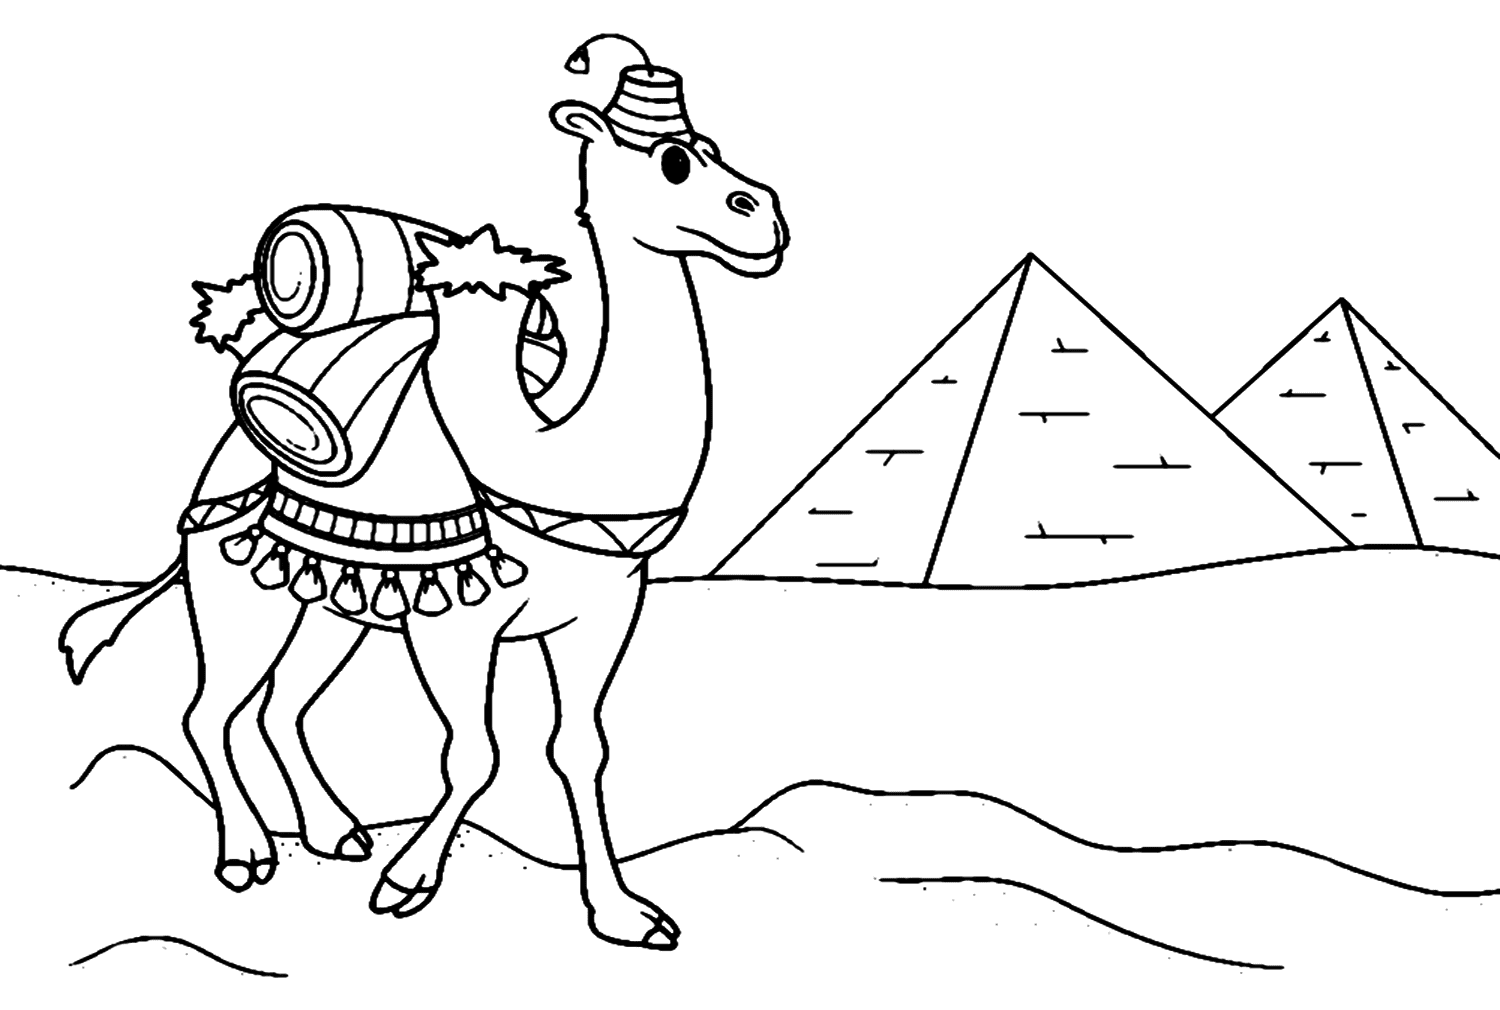 Camello transportando carga desde camello